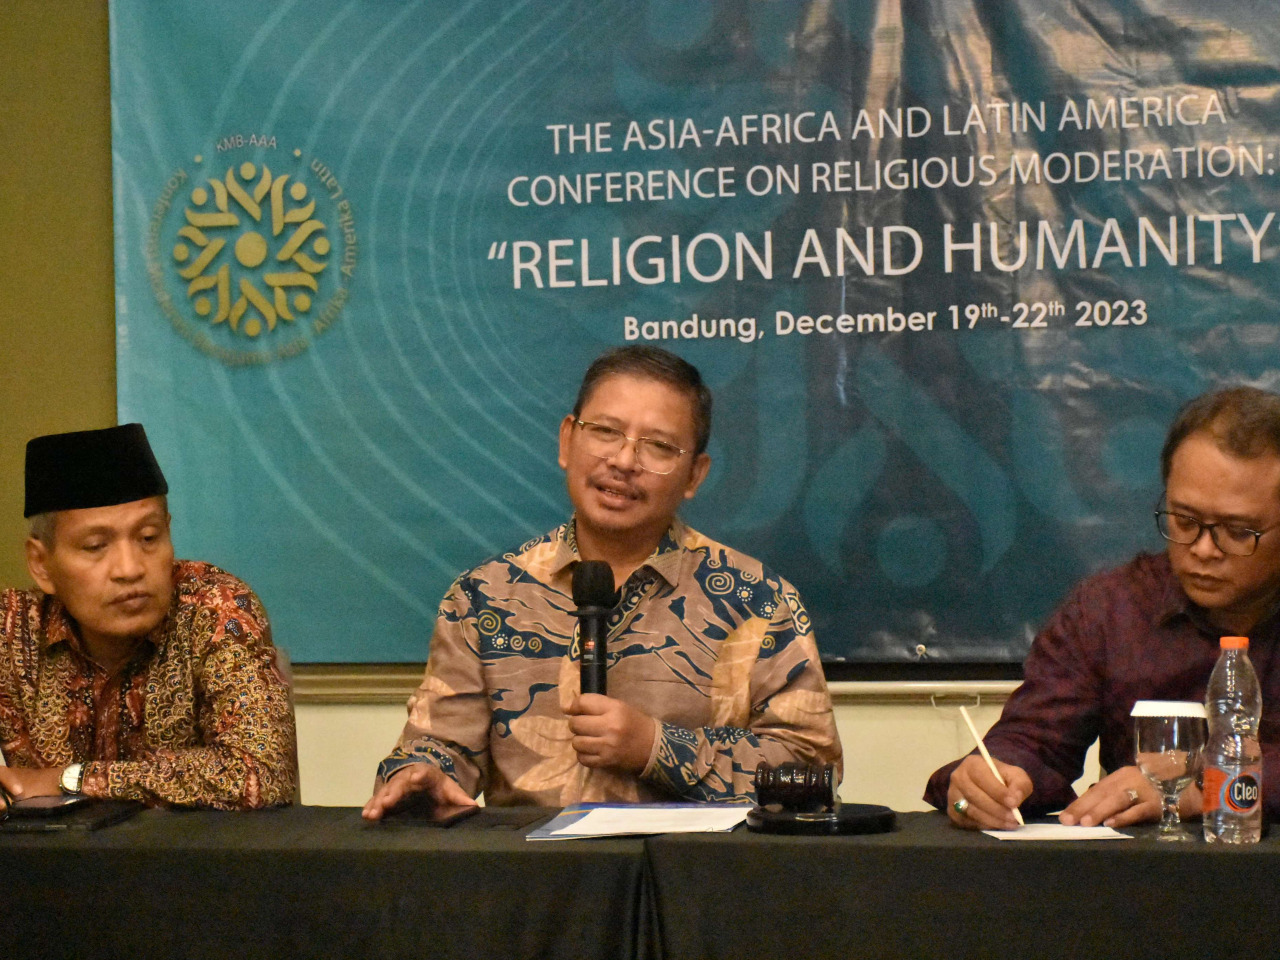 Kemenag Gelar Konferensi Moderasi Beragama Asia-Afrika dan Amerika Latin, Bahas Perdamaian Global